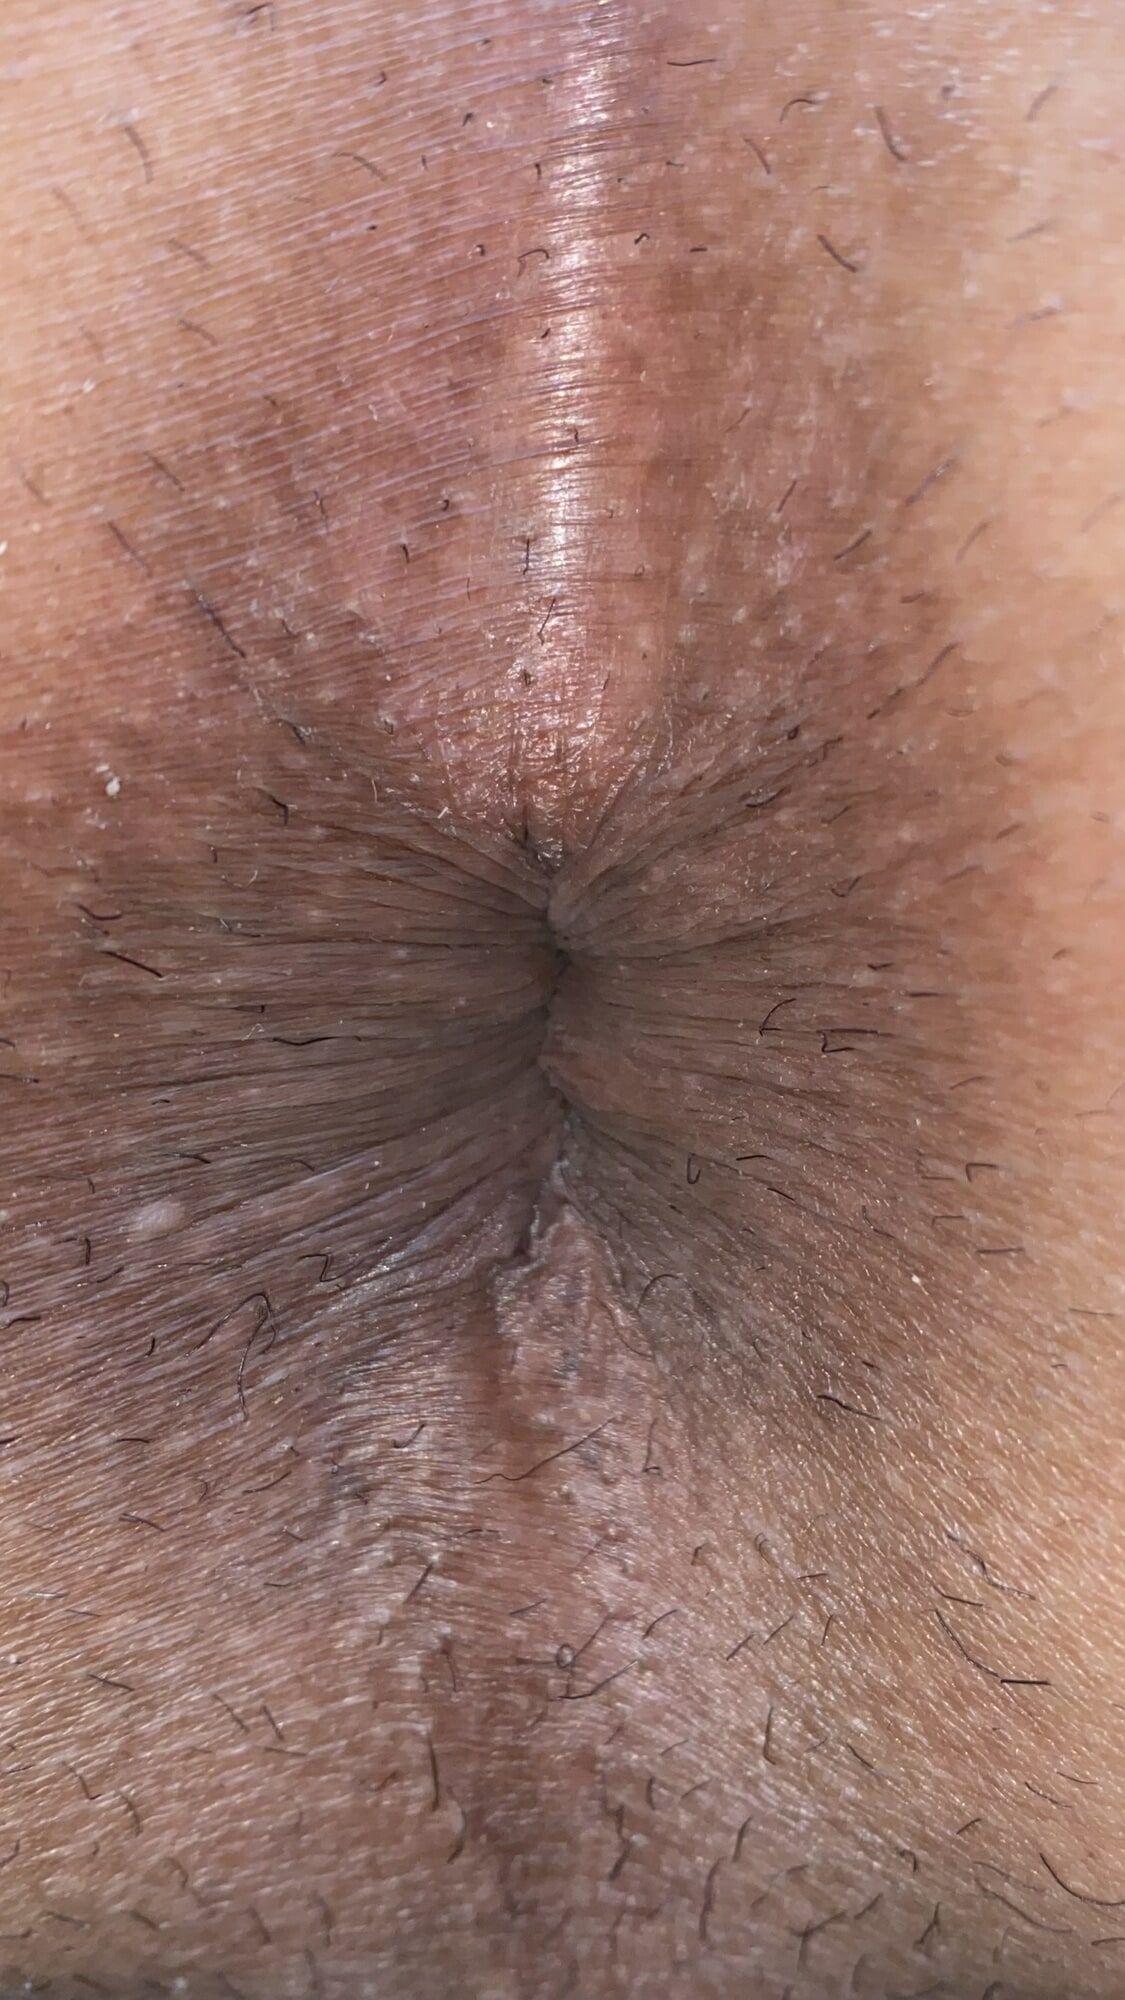 Close-up of a man's anus #8